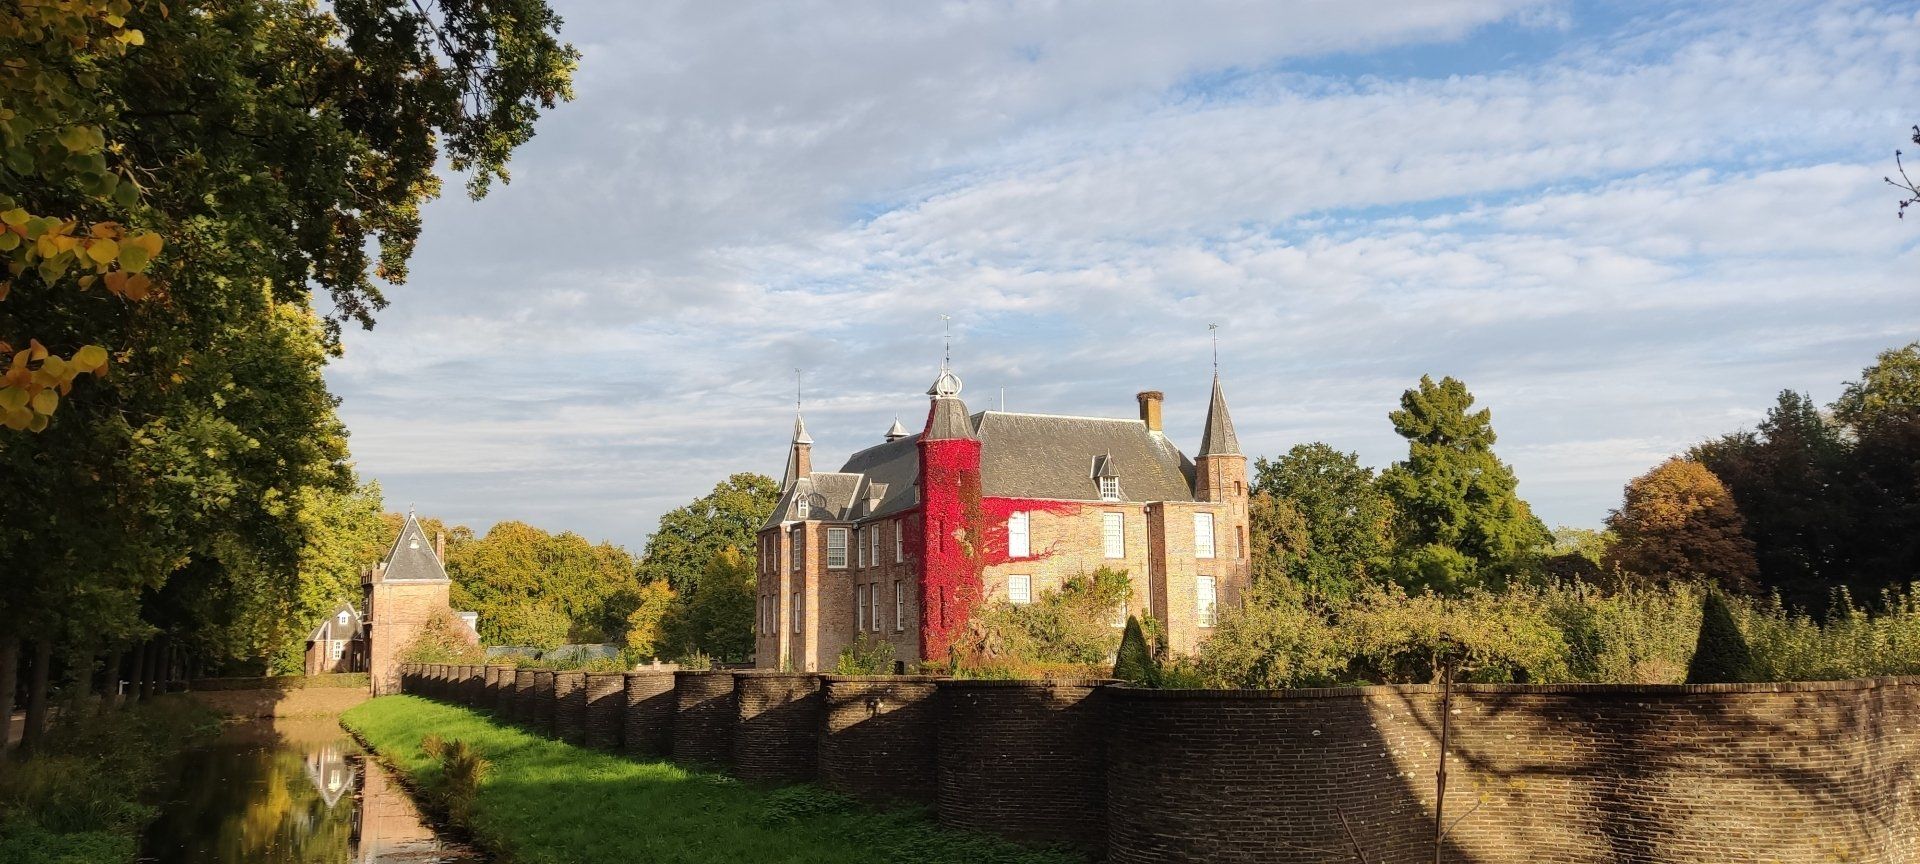 Castle Zuylen along the Vecht river